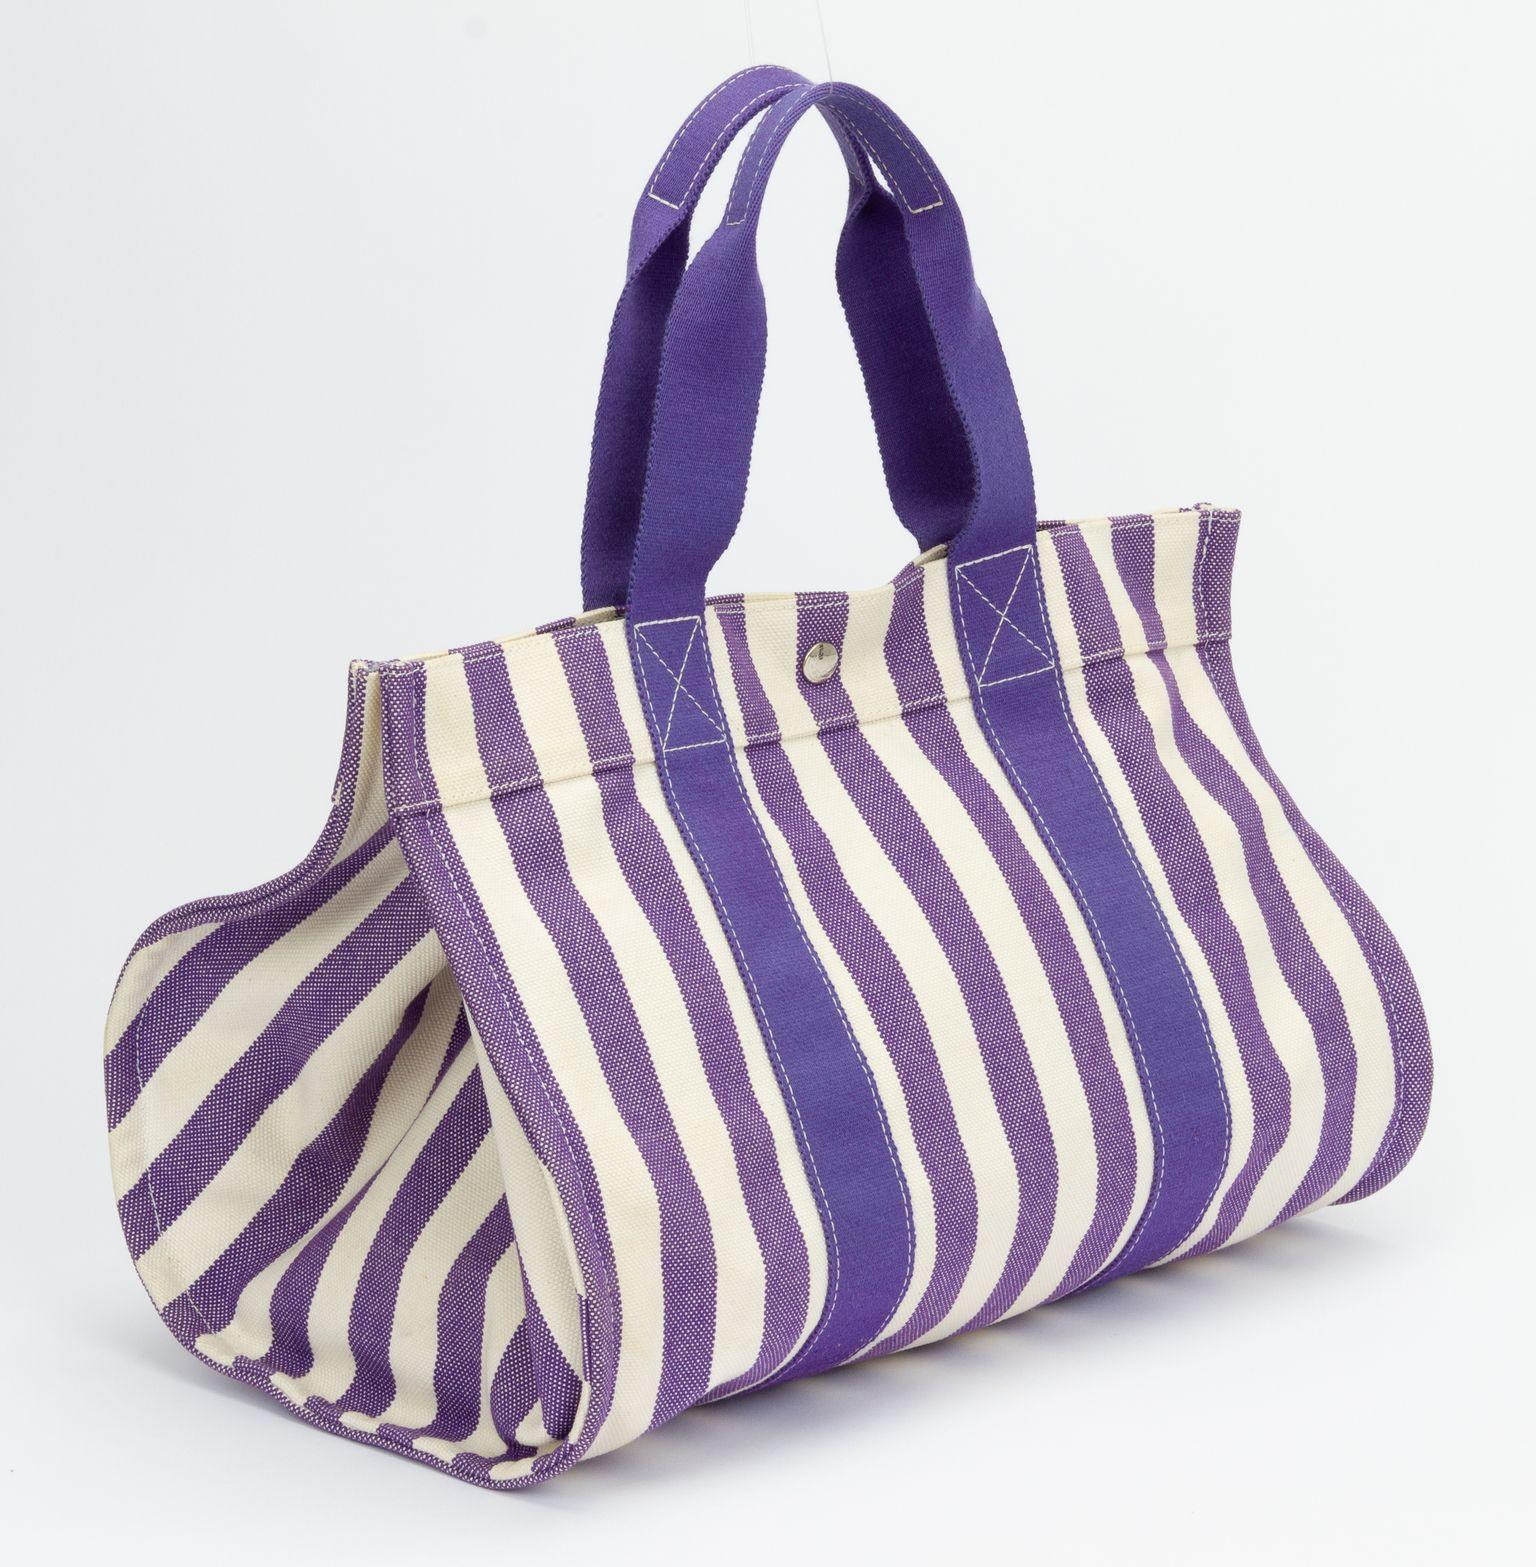 Grand sac de plage rayé Hermès en toile, violet et blanc. Comprend une pochette en tissu (L 8,75